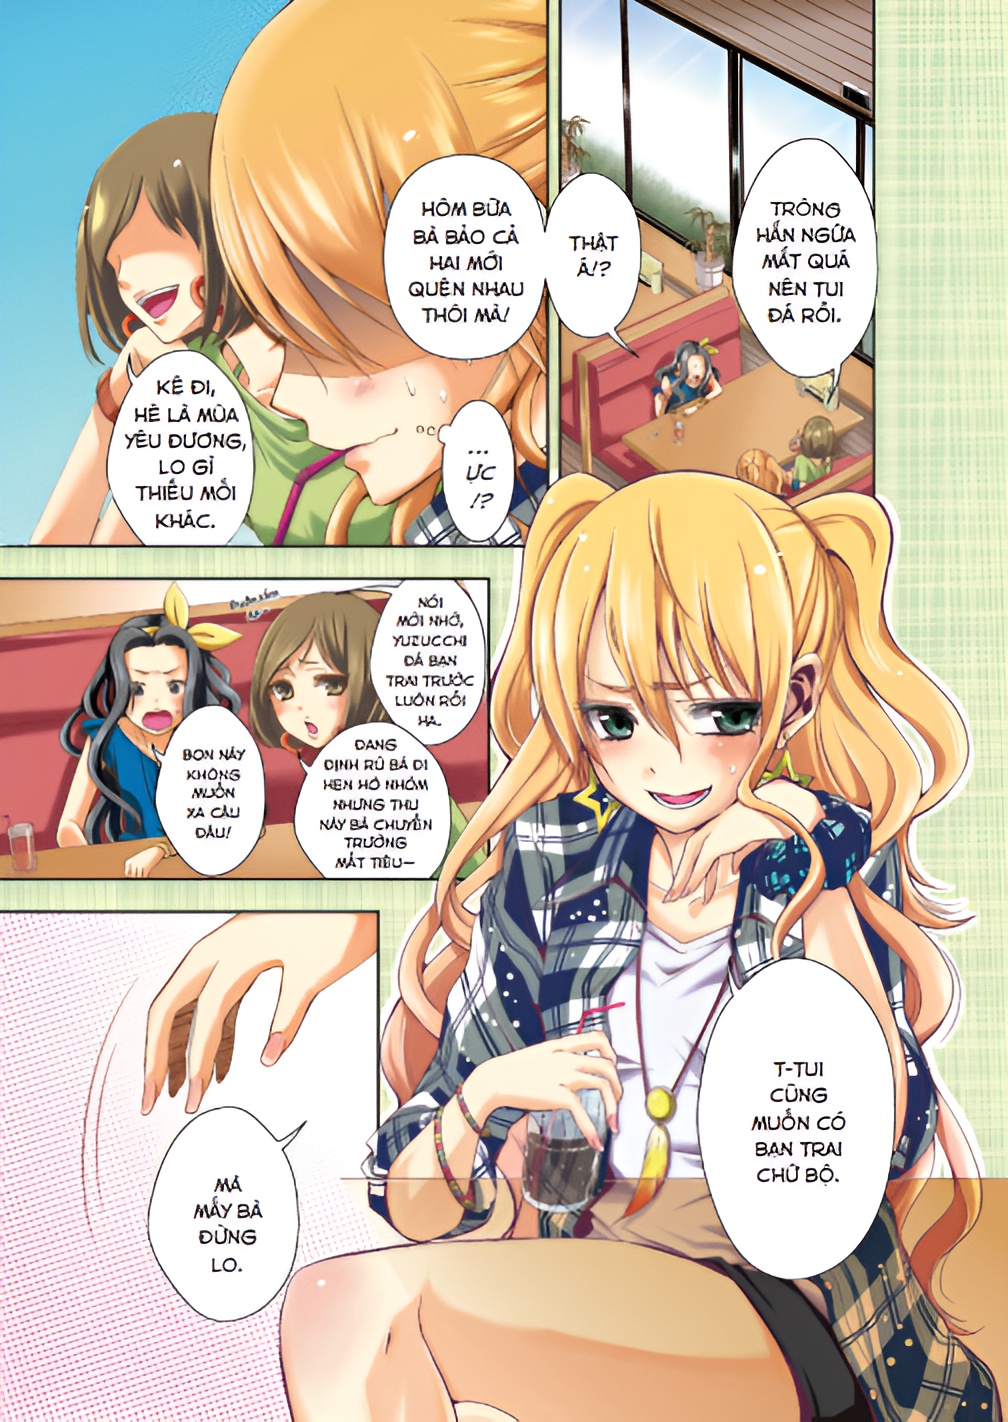 [Manga] [GL] Citrus - Tập 1- Amakbooks